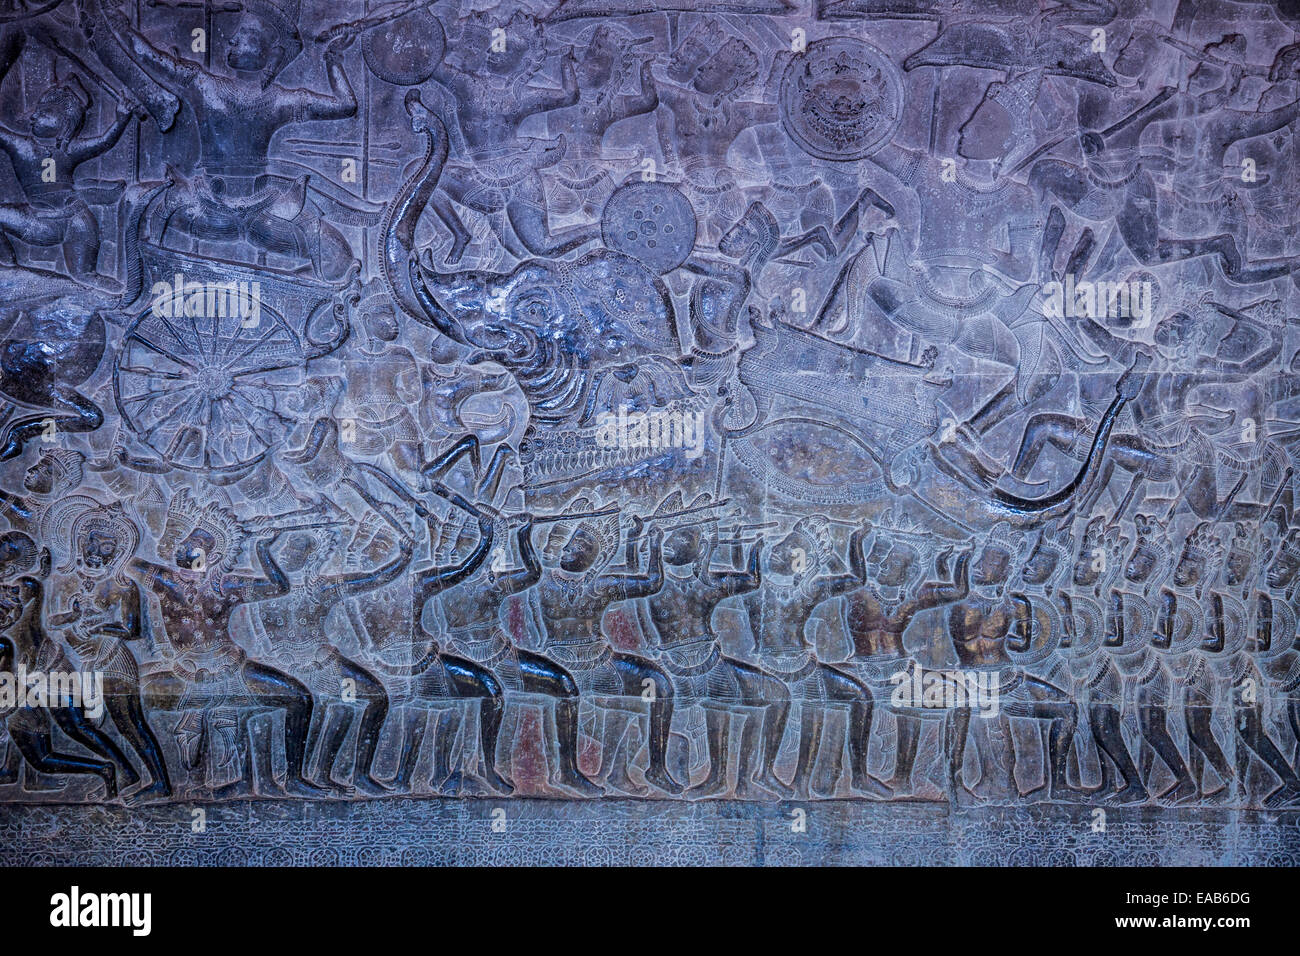 Kambodscha, Angkor Wat.  Flachrelief zeigt Pandava Krieger in der Schlacht von Kurukshetra. Stockfoto